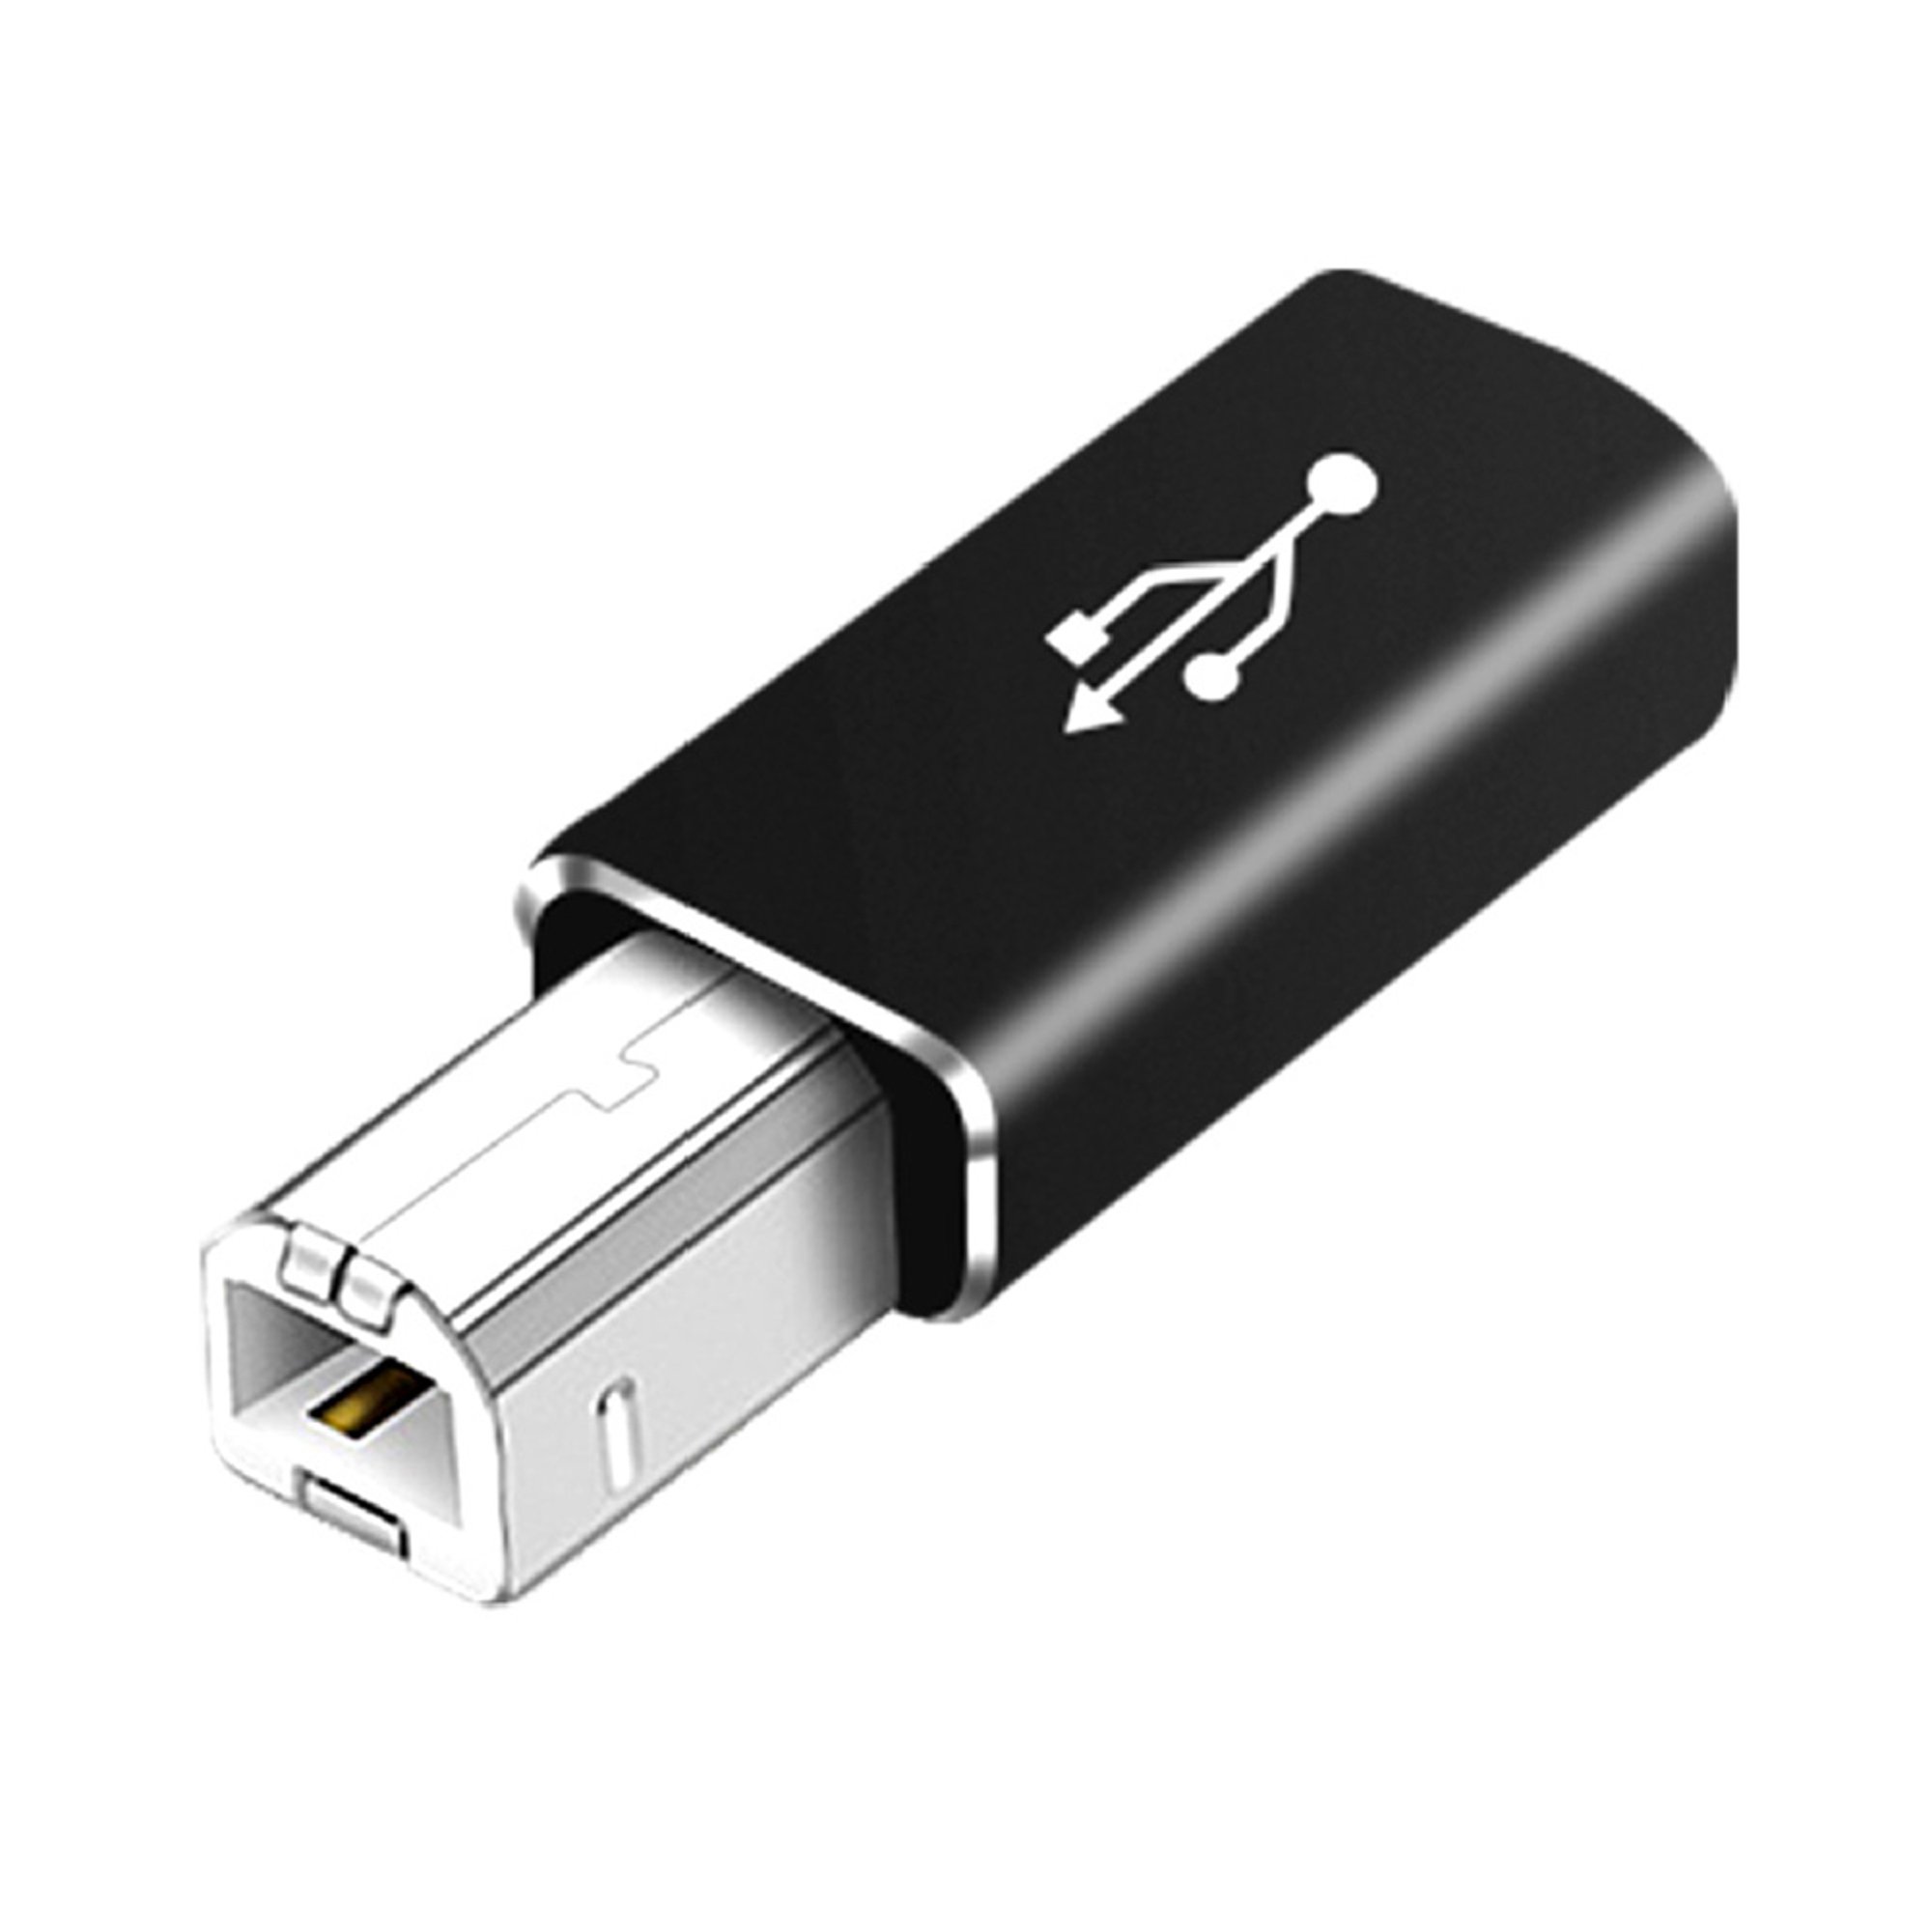 Cable de carga macho adaptador USB tipo-C a USB-A 2.0  Basics, 6 pies  (1.8 metros), color negro.